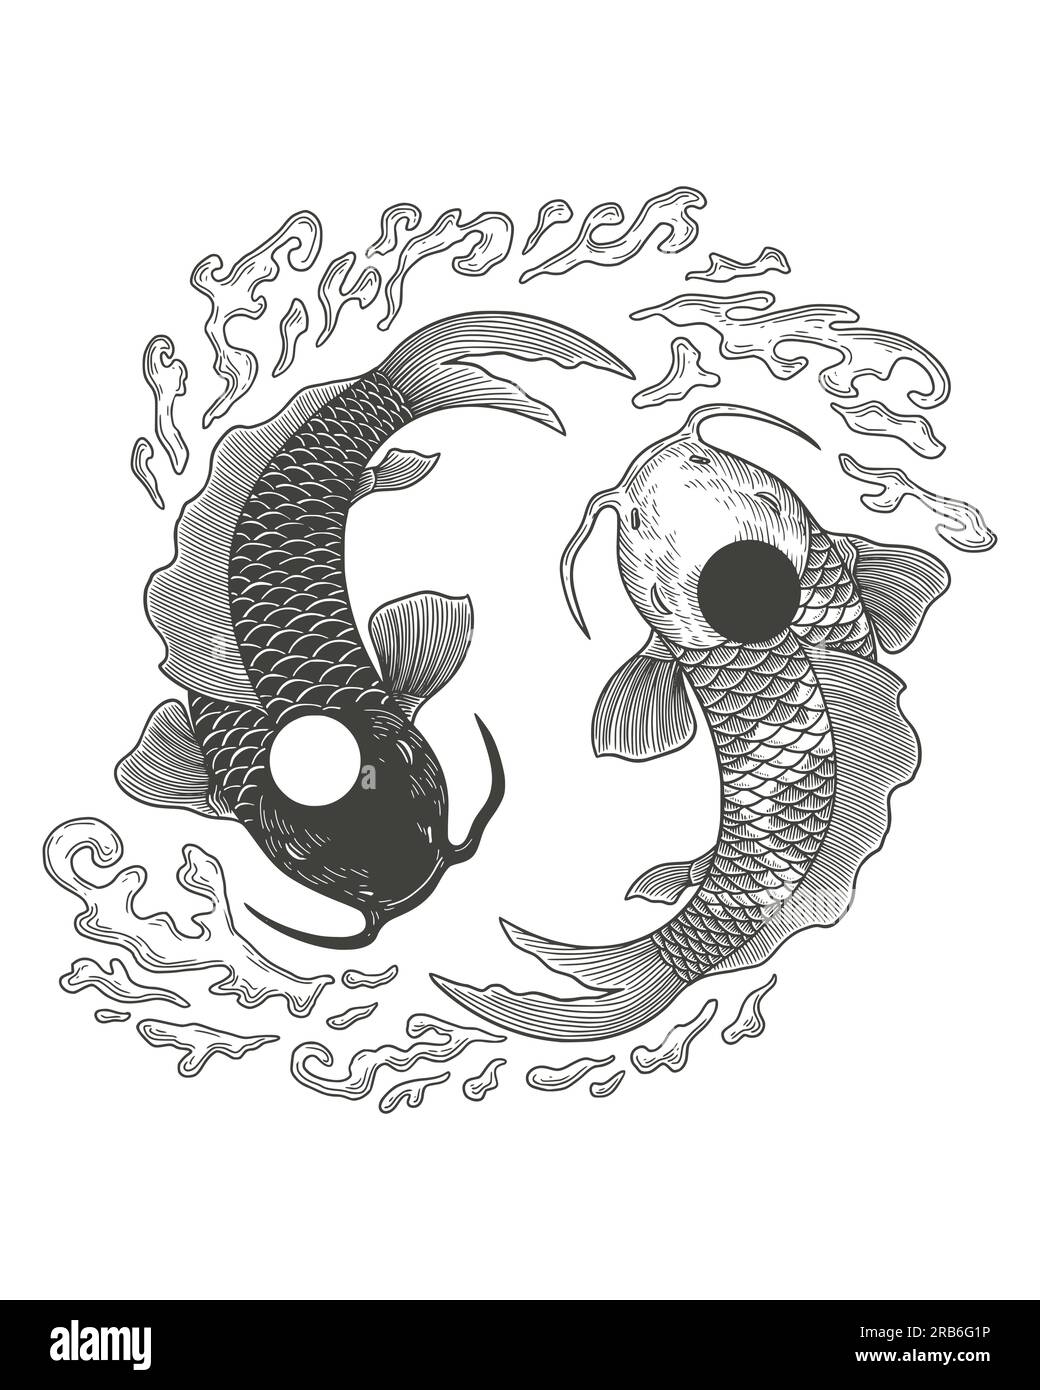 Zwei Koi-Karpfenfische im Kreis des Yin-Yang-Symbols. Vektorgravierung im Vintage-Stil Stock Vektor